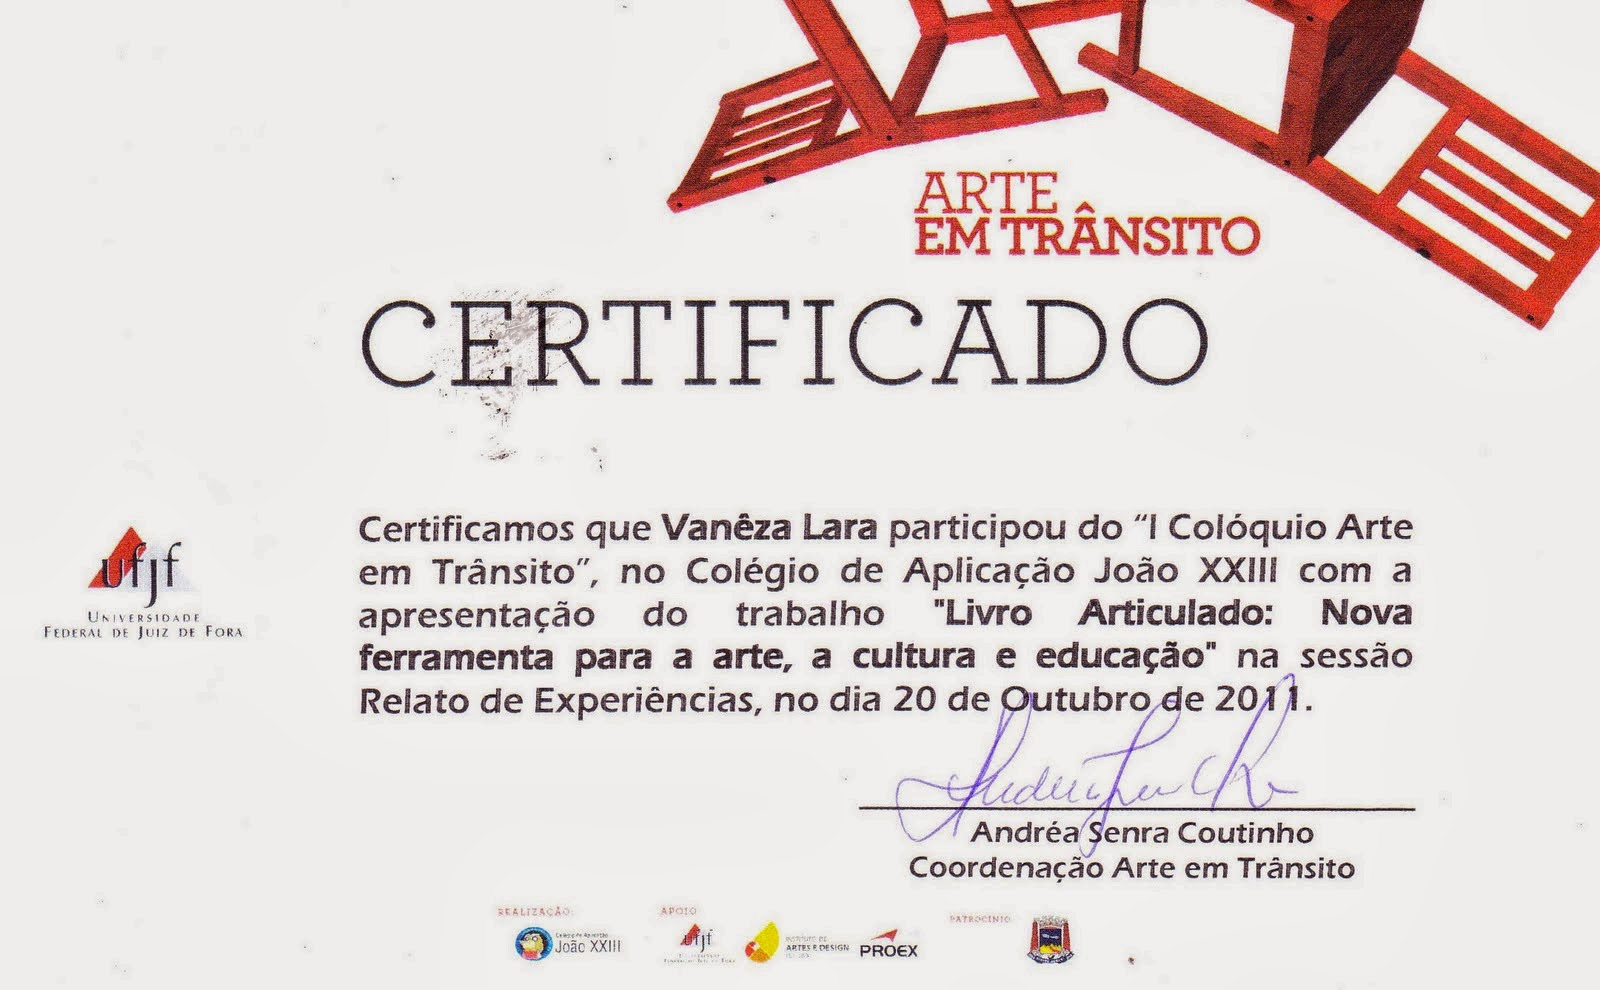 "I Colóquio Arte em trânsito" - Colégio João XIII - RELATO DE EXPERIÊNCIA / 2011